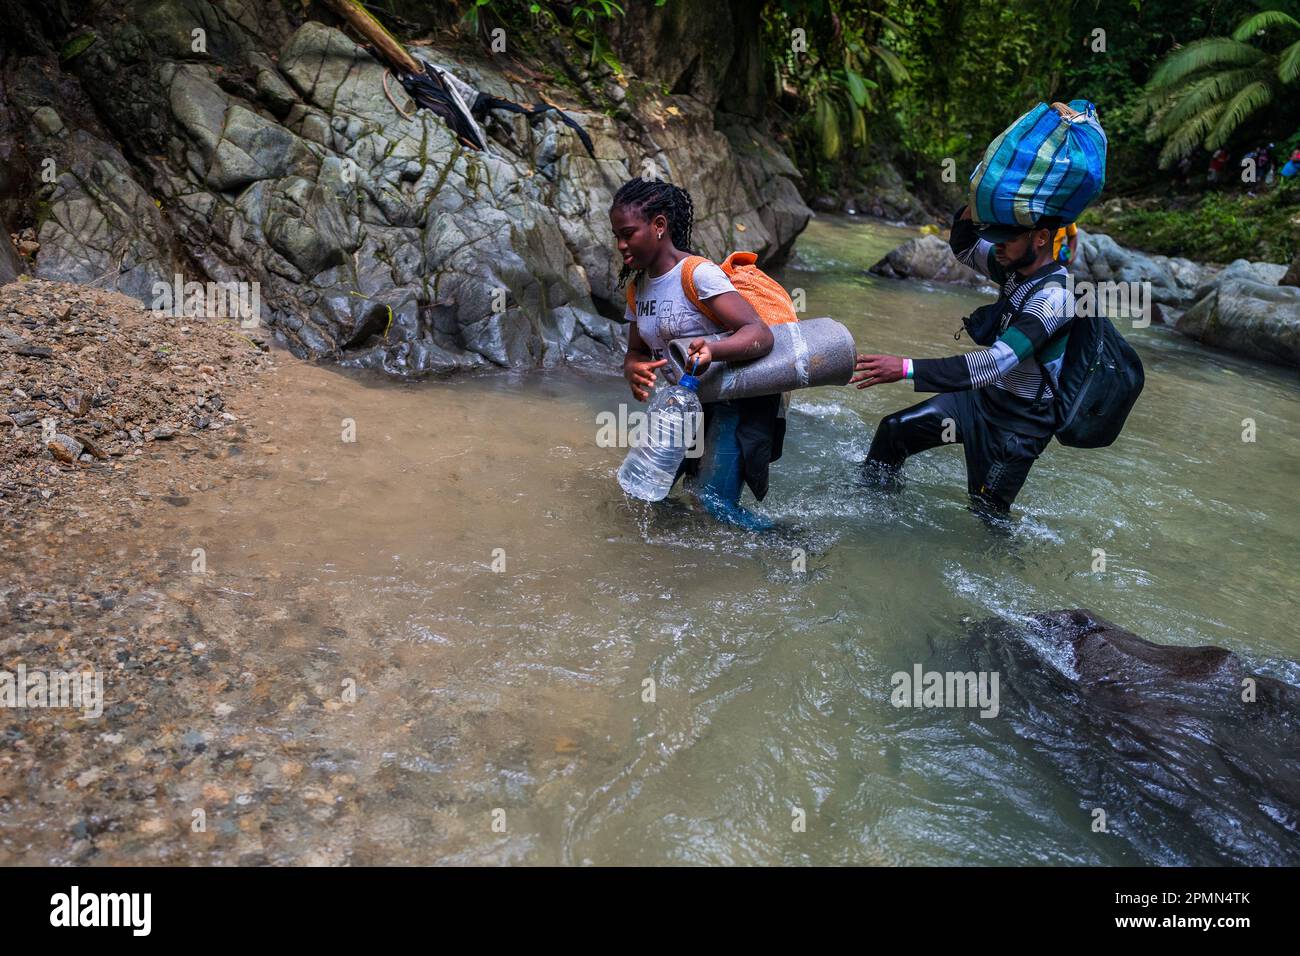 Les migrants haïtiens se sont empasillés par la rivière dans la jungle sauvage et dangereuse du fossé Darién entre la Colombie et Panamá. Banque D'Images